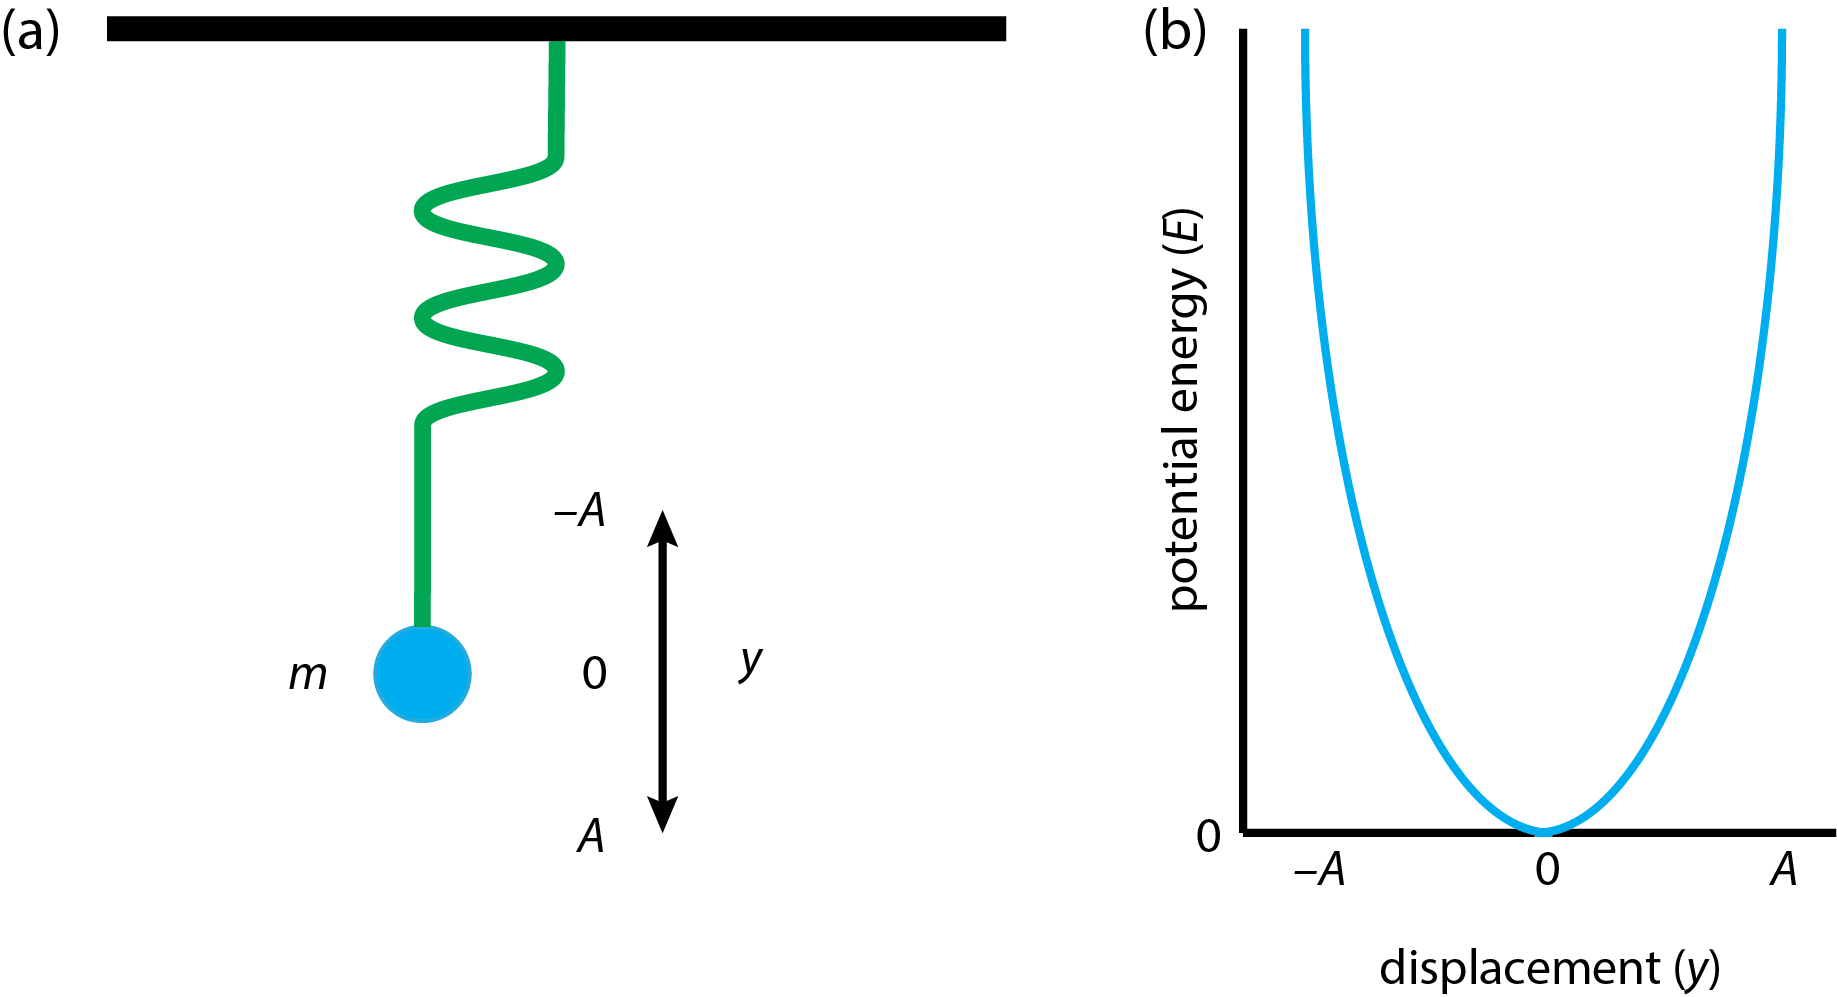 El modelo para un oscilador armónico simple se muestra en (a) y su energía potencial en función del desplazamiento se muestra en (b).